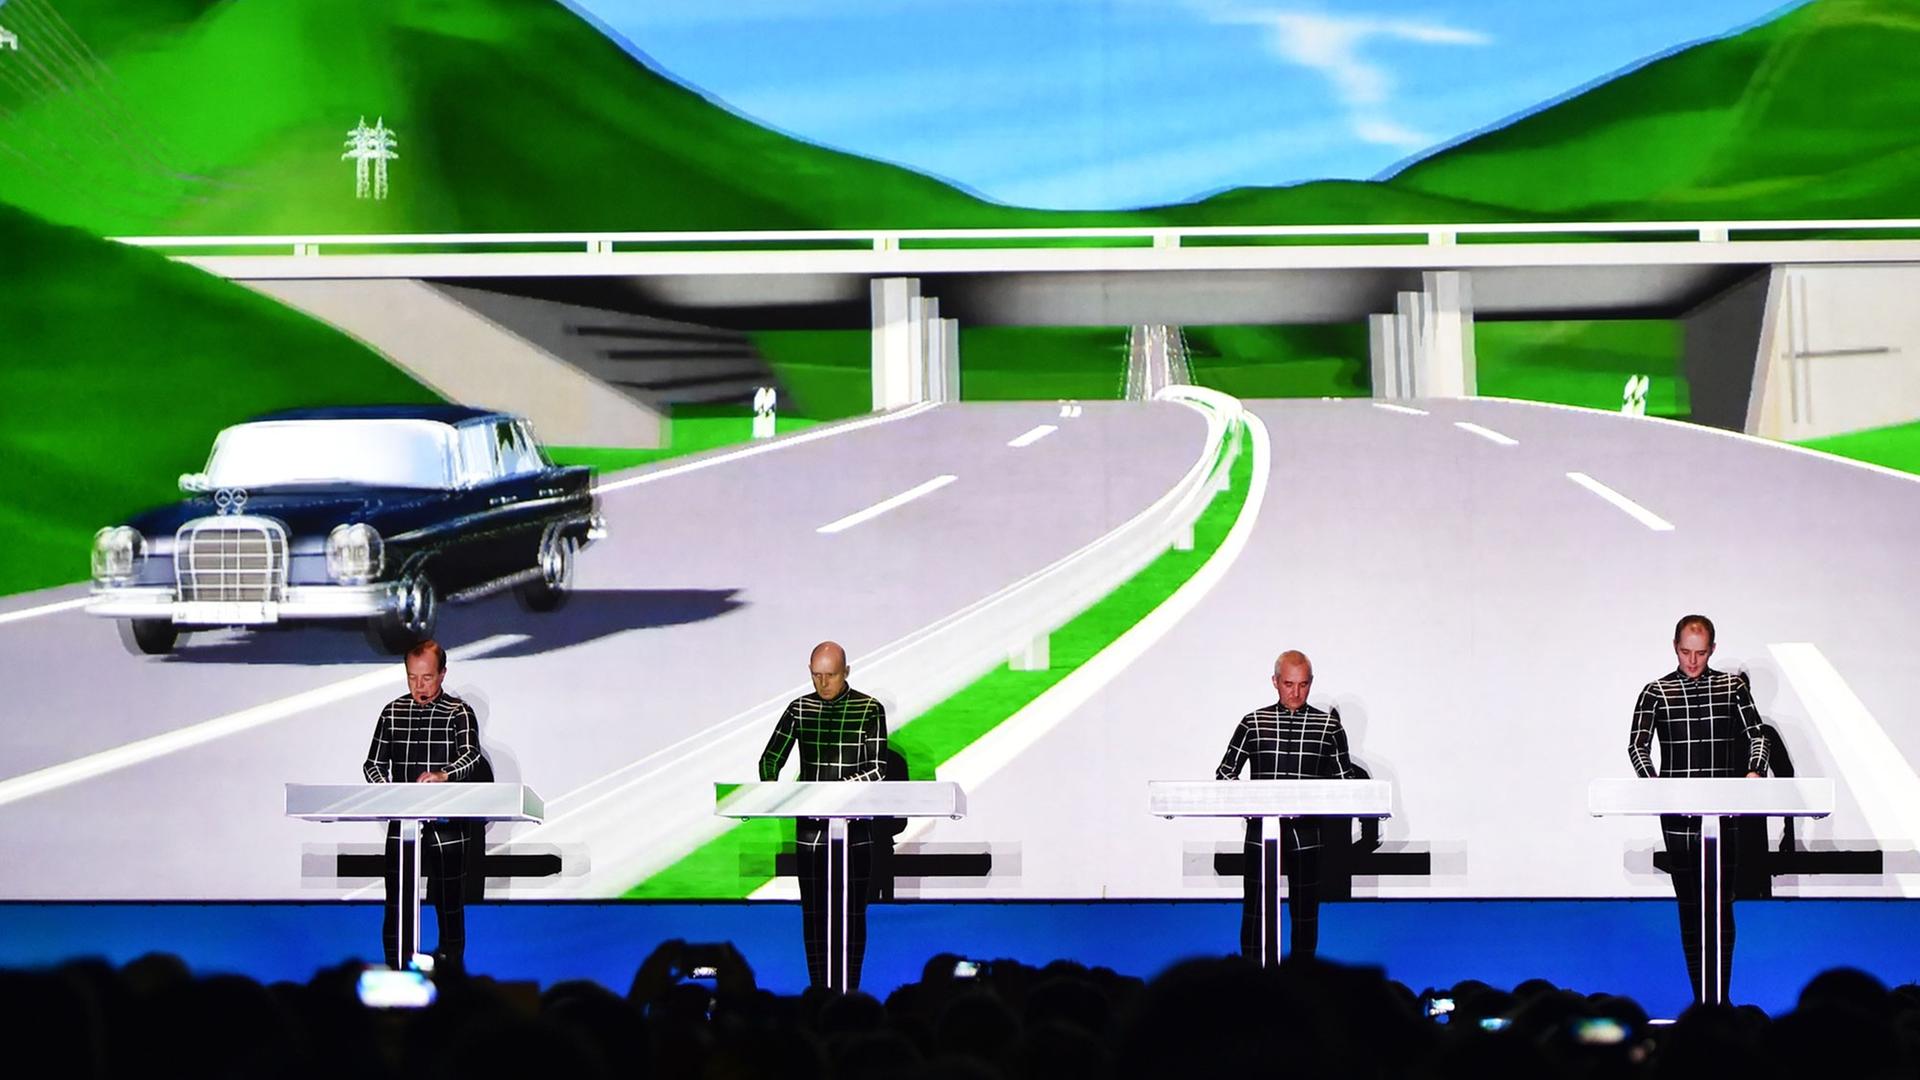 Die Band Kraftwerk spielt auf der Bühne, im Hintergrund ist eine riesige computeranimierte Leinwand zu sehen. 